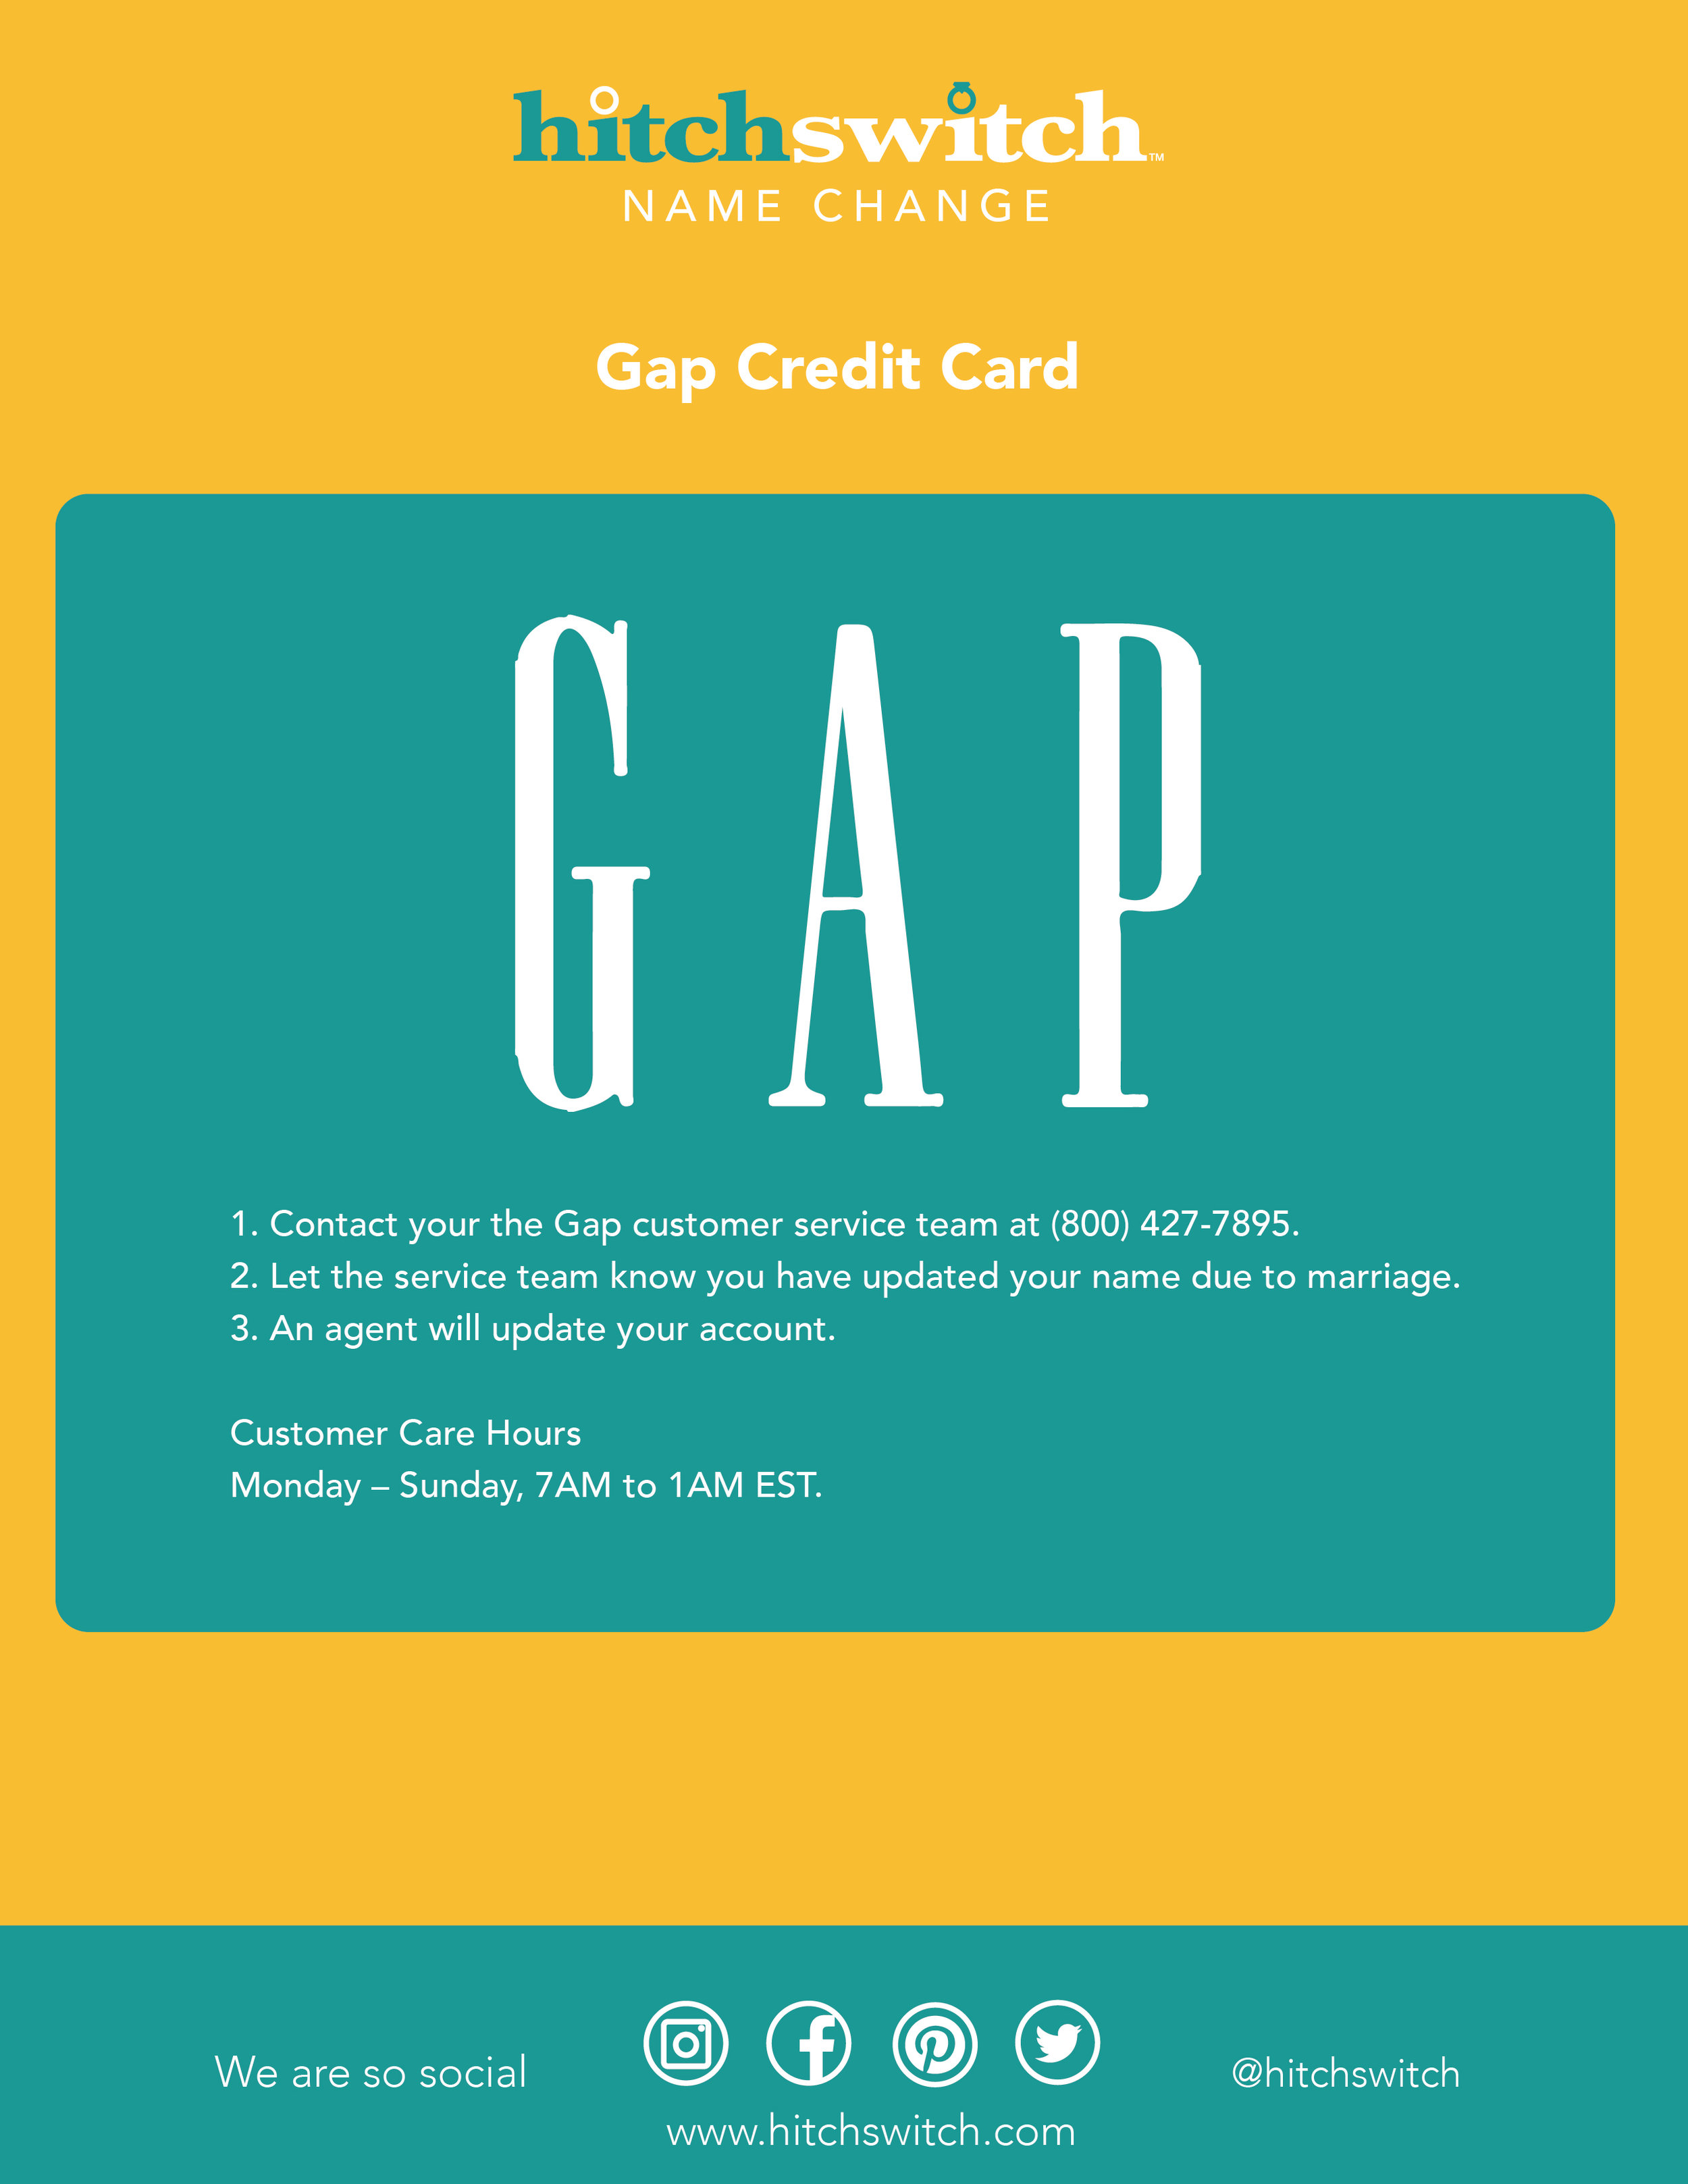 Gap.jpg